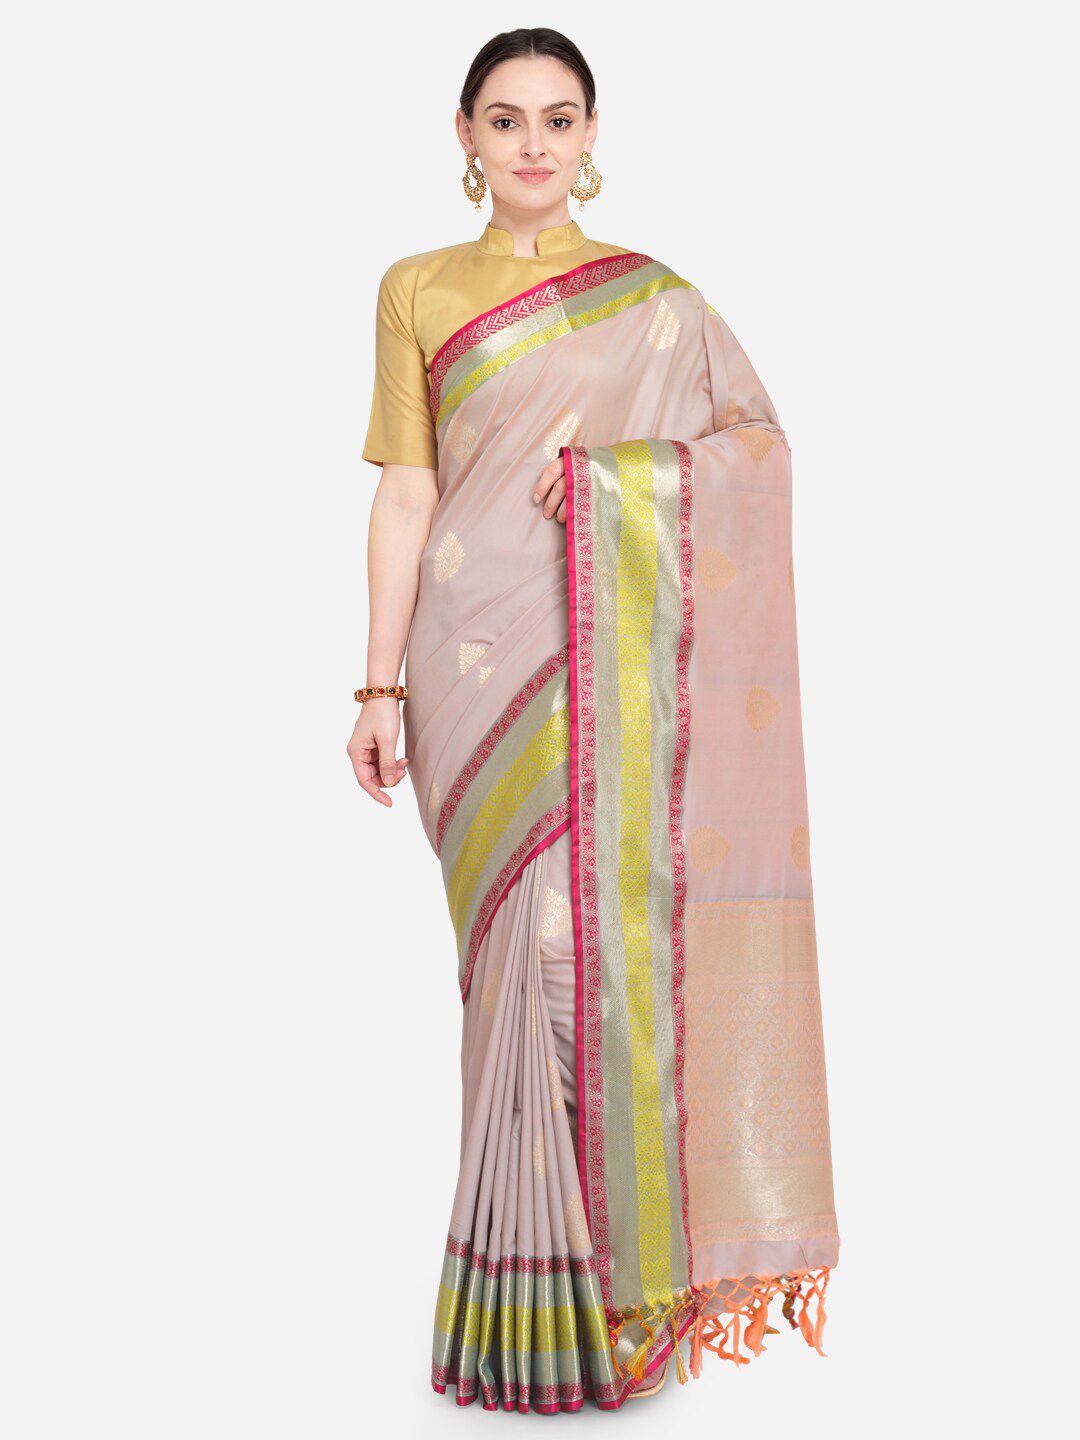 Varkala Silk Sarees Lavender & Red Paisley Zari Silk Blend Banarasi Saree Price in India